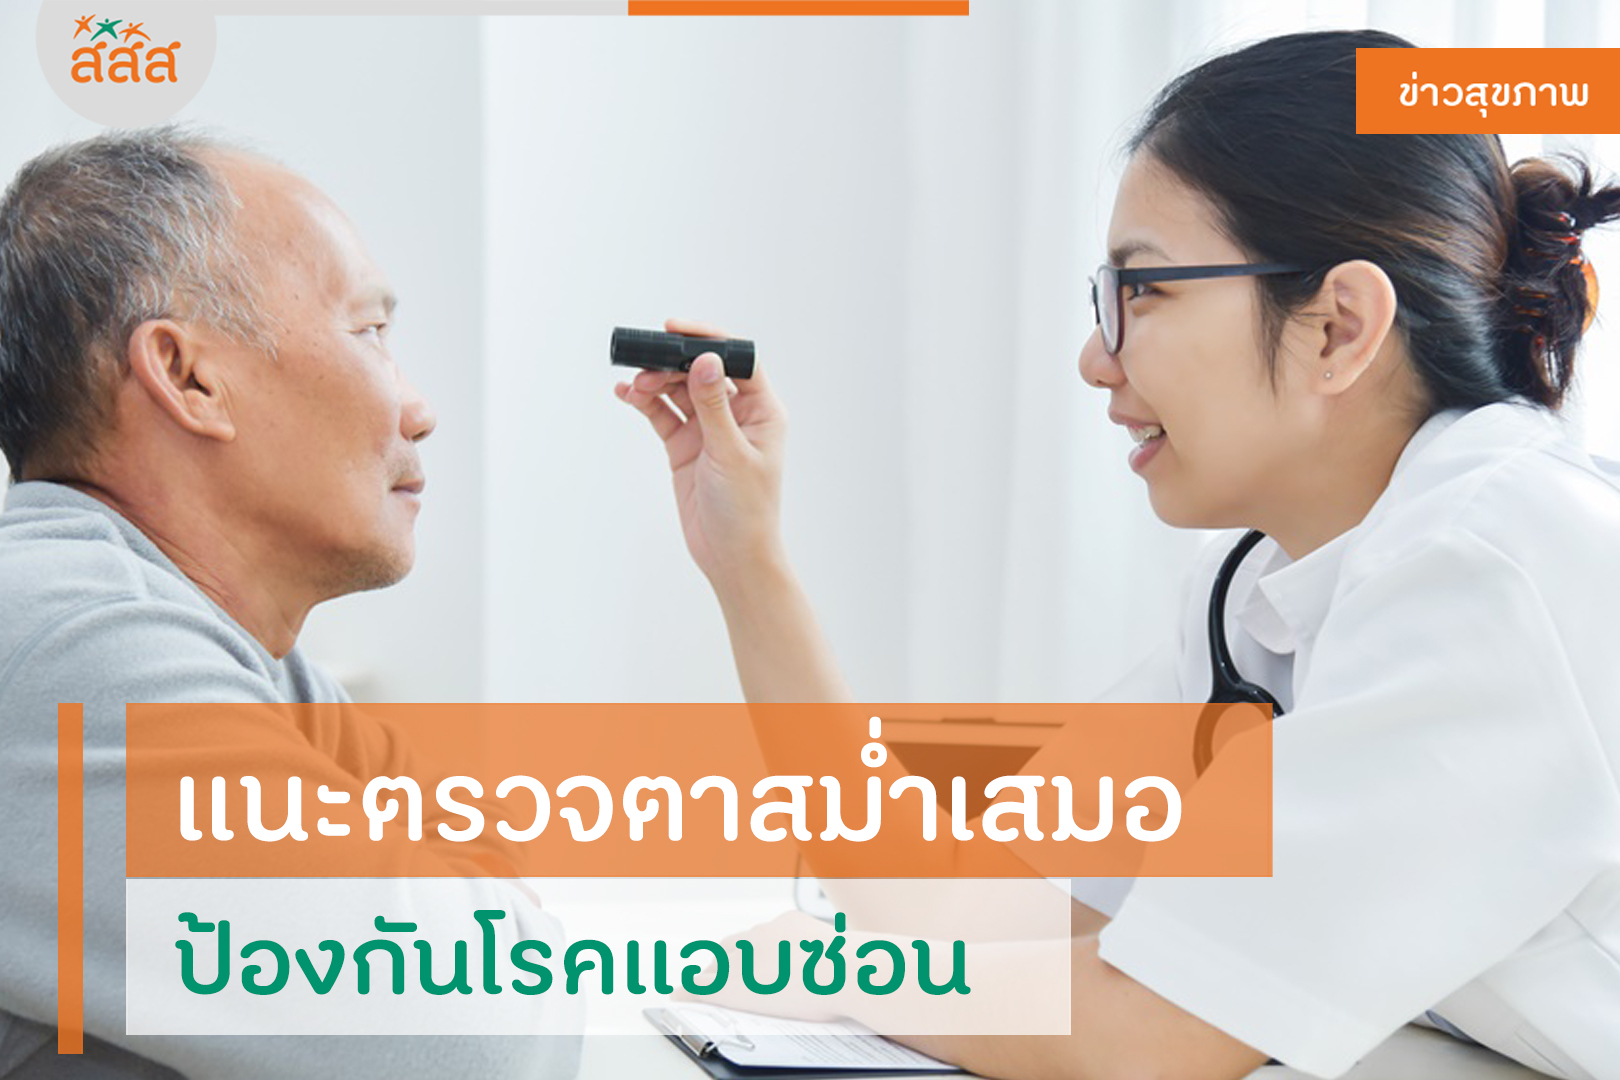 แนะตรวจตาสม่ำเสมอ ป้องกันโรคแอบซ่อน thaihealth